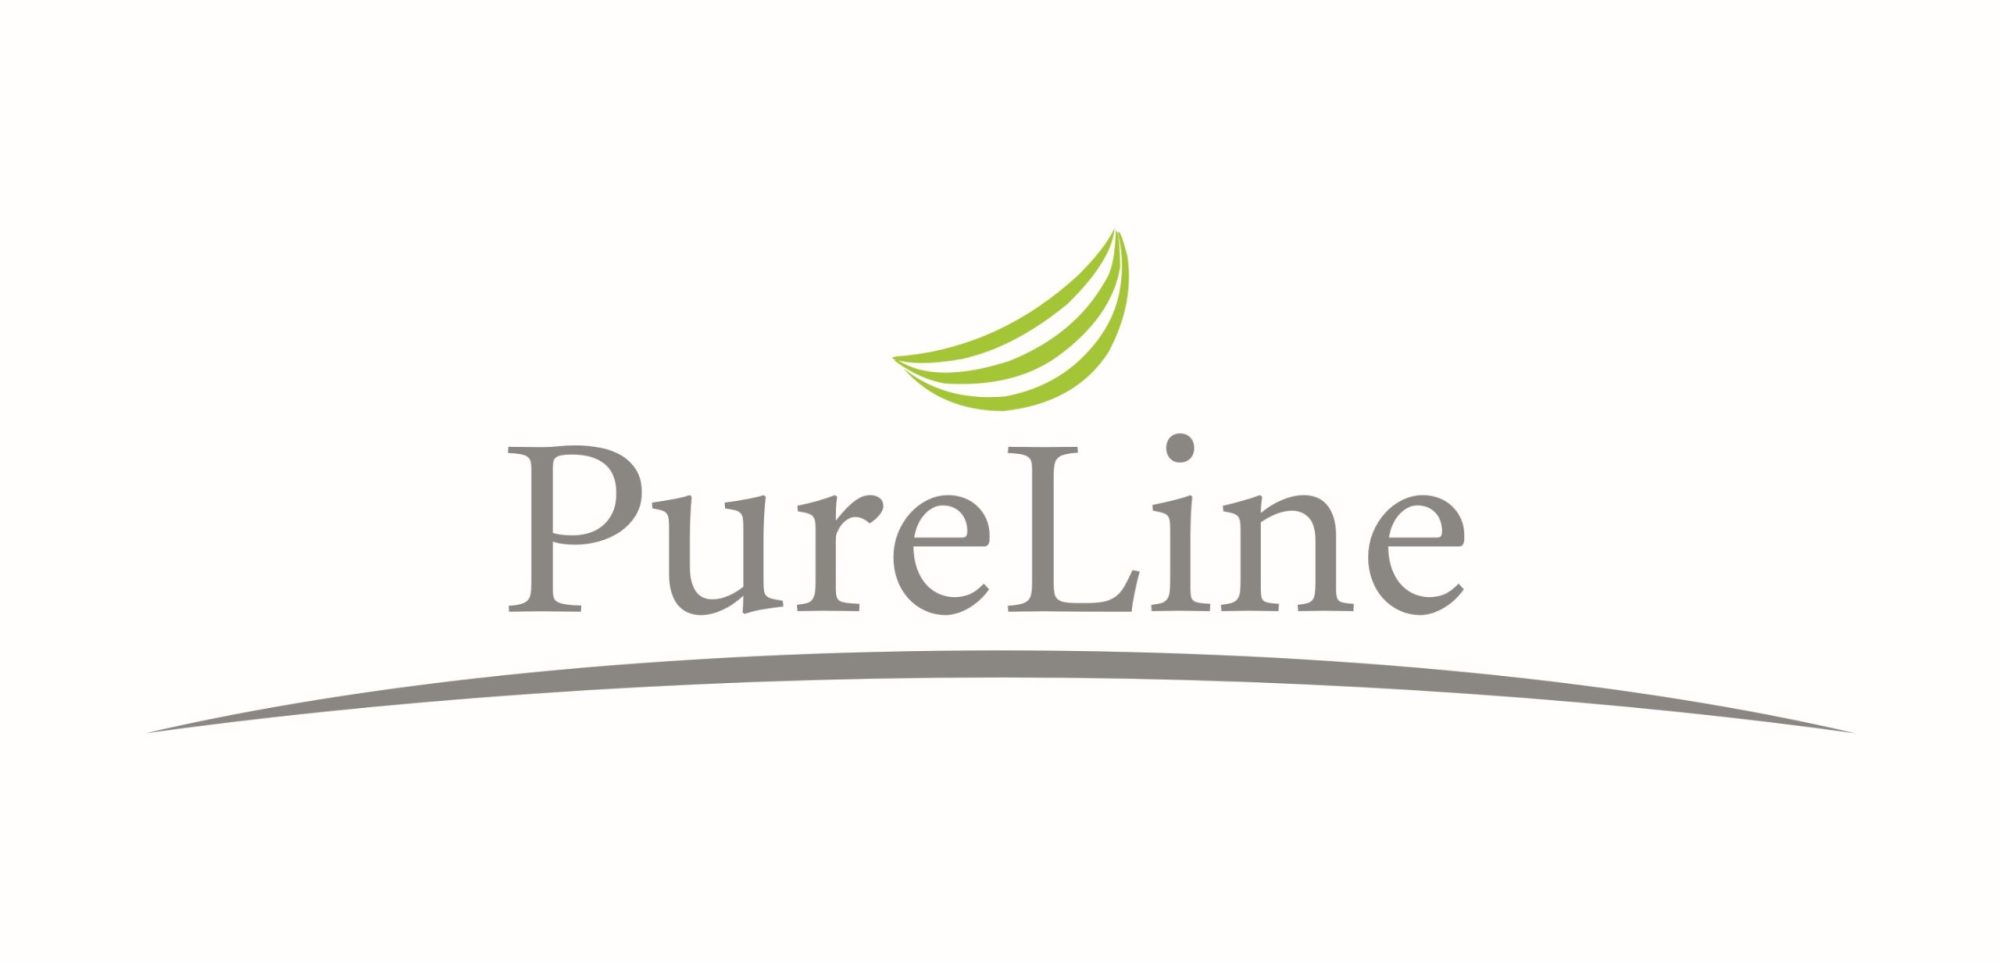 Pureline